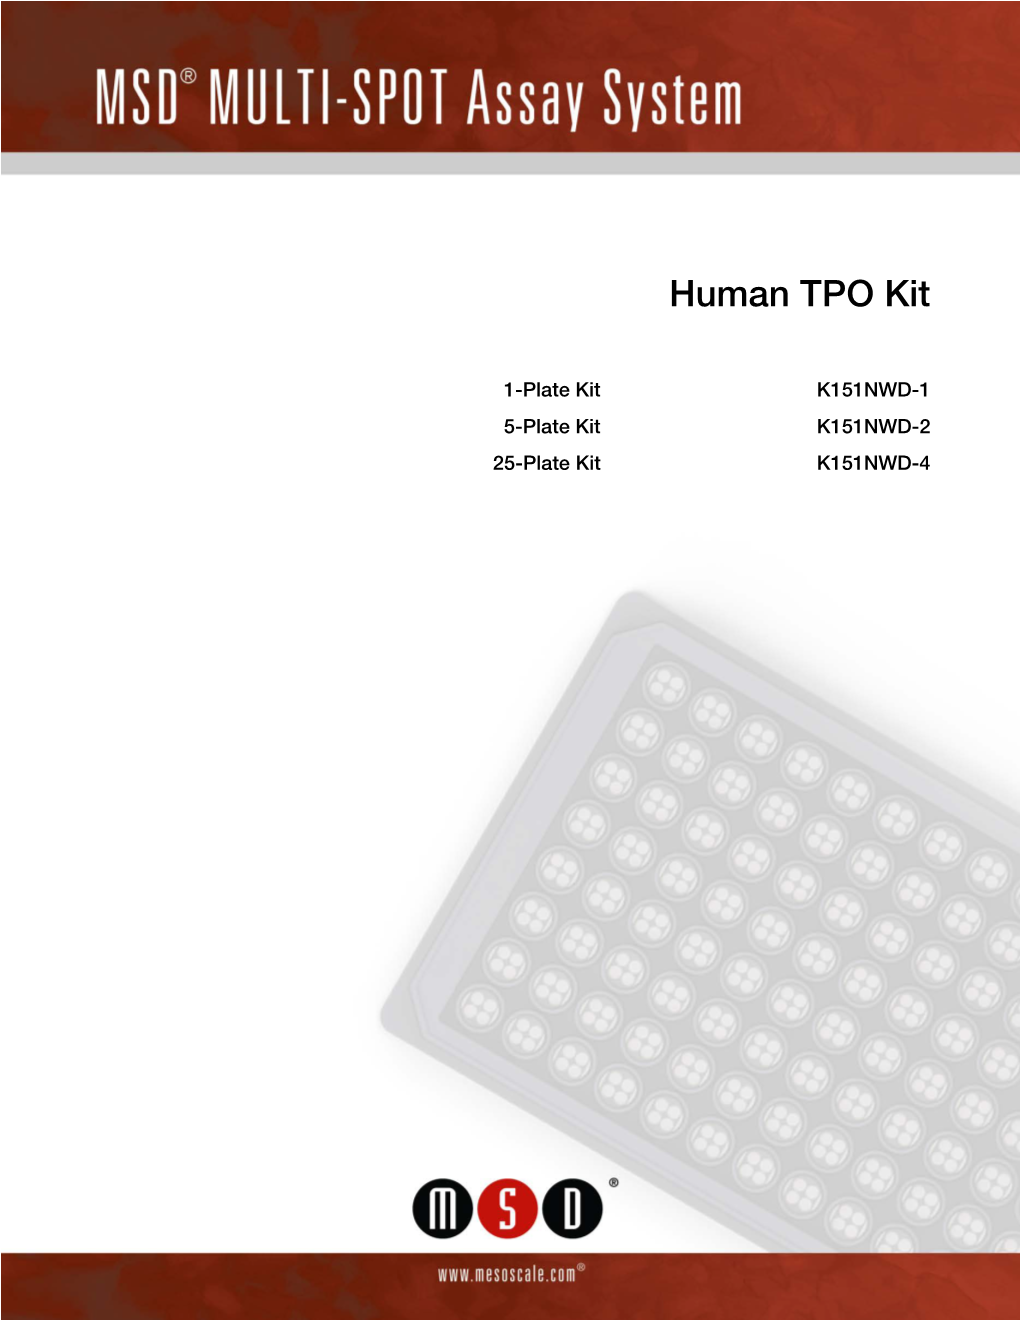 Human TPO Kit